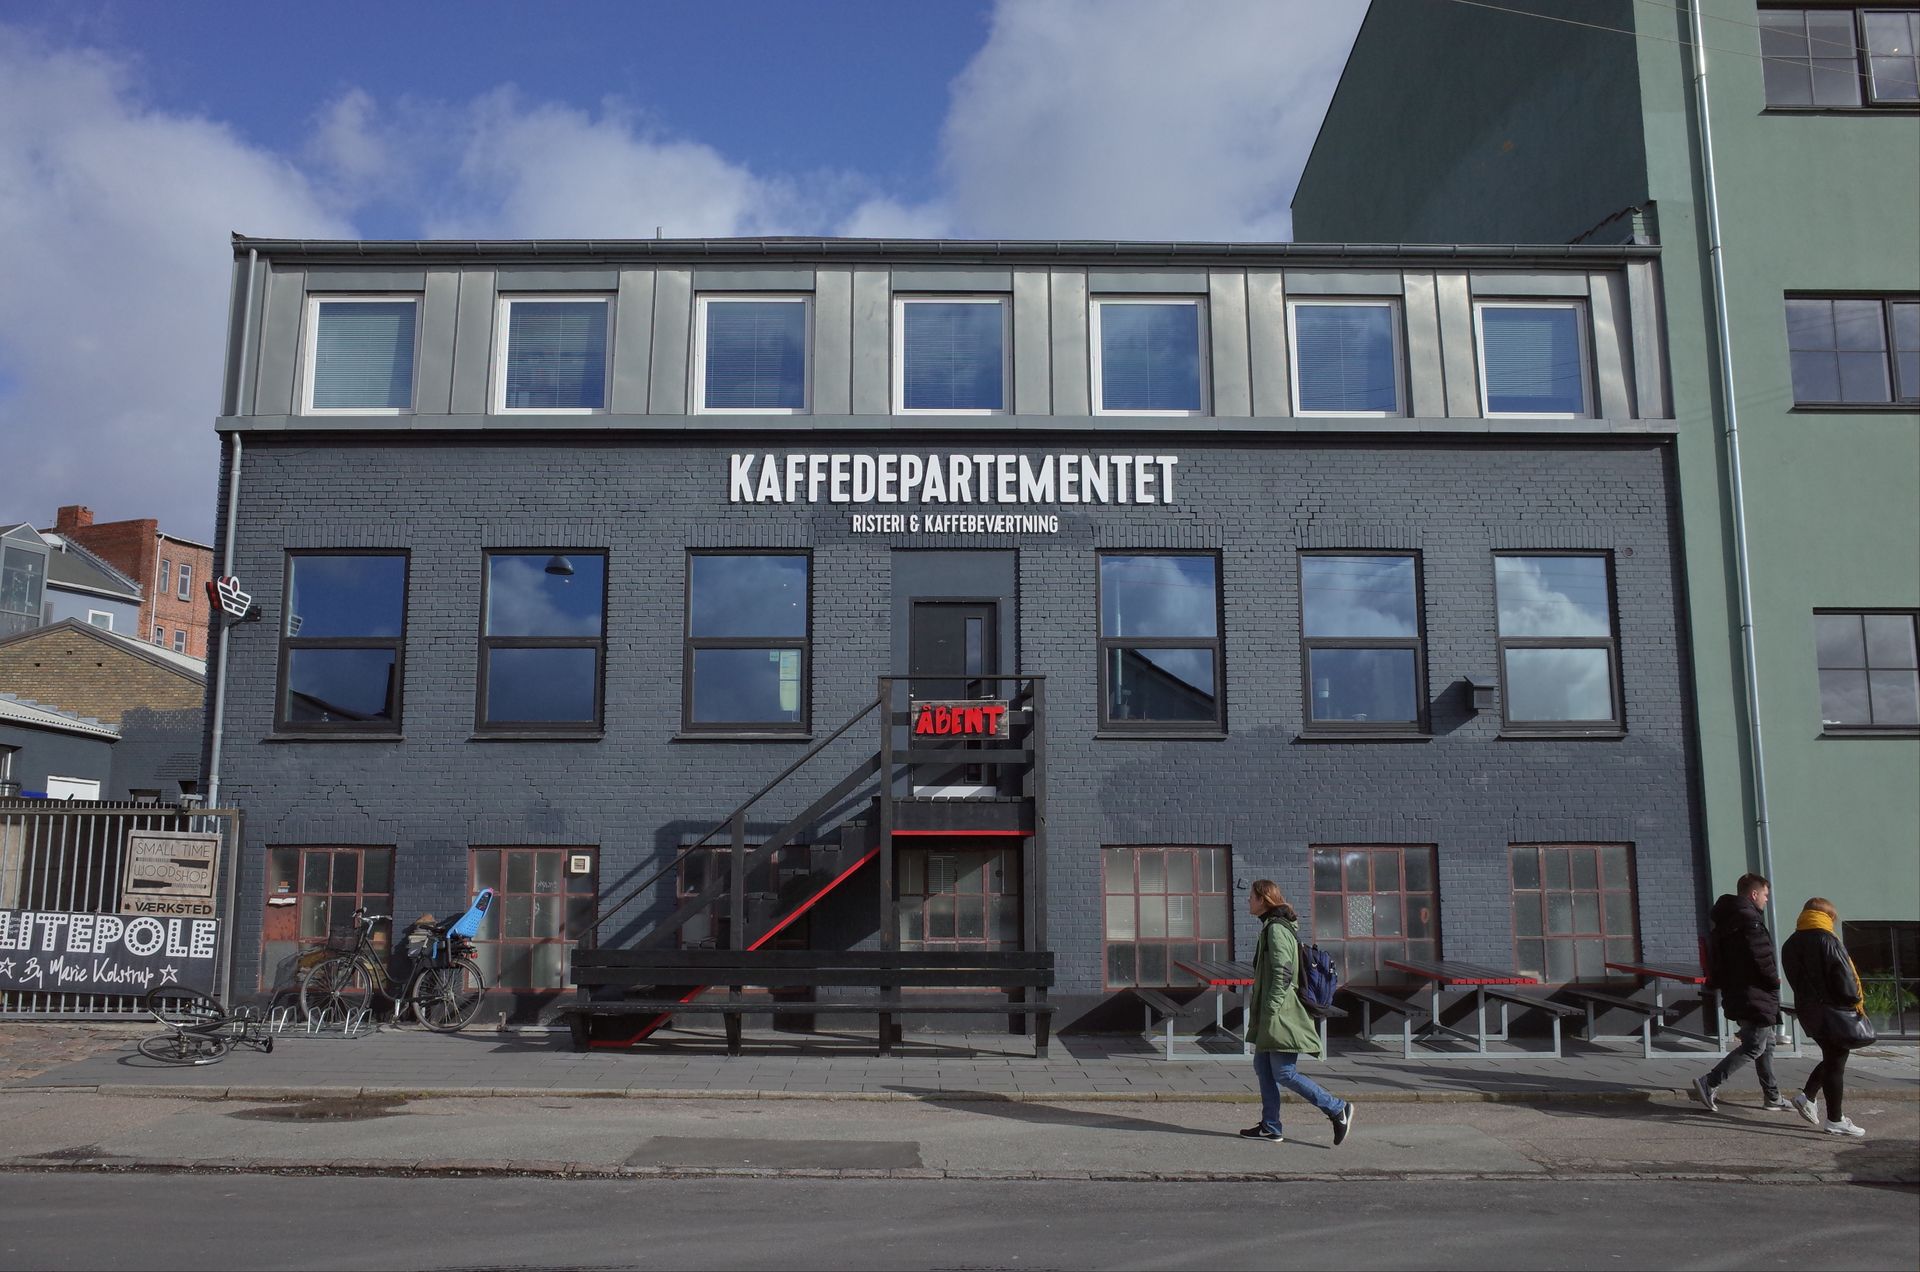 Le café de spécialité Kaffedepartementet à Nordvest, Copenhague